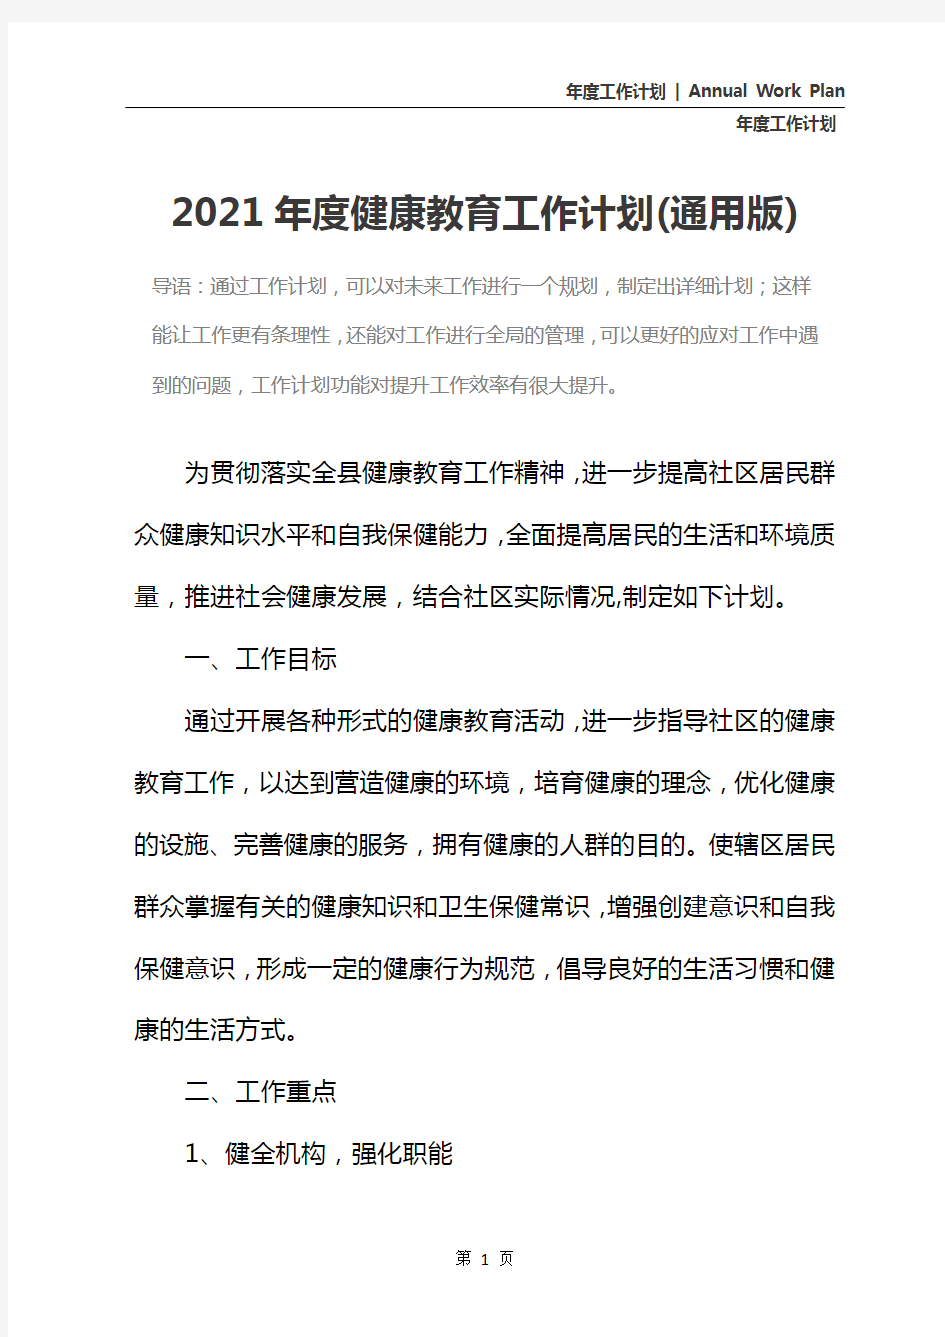 2021年度健康教育工作计划(通用版)